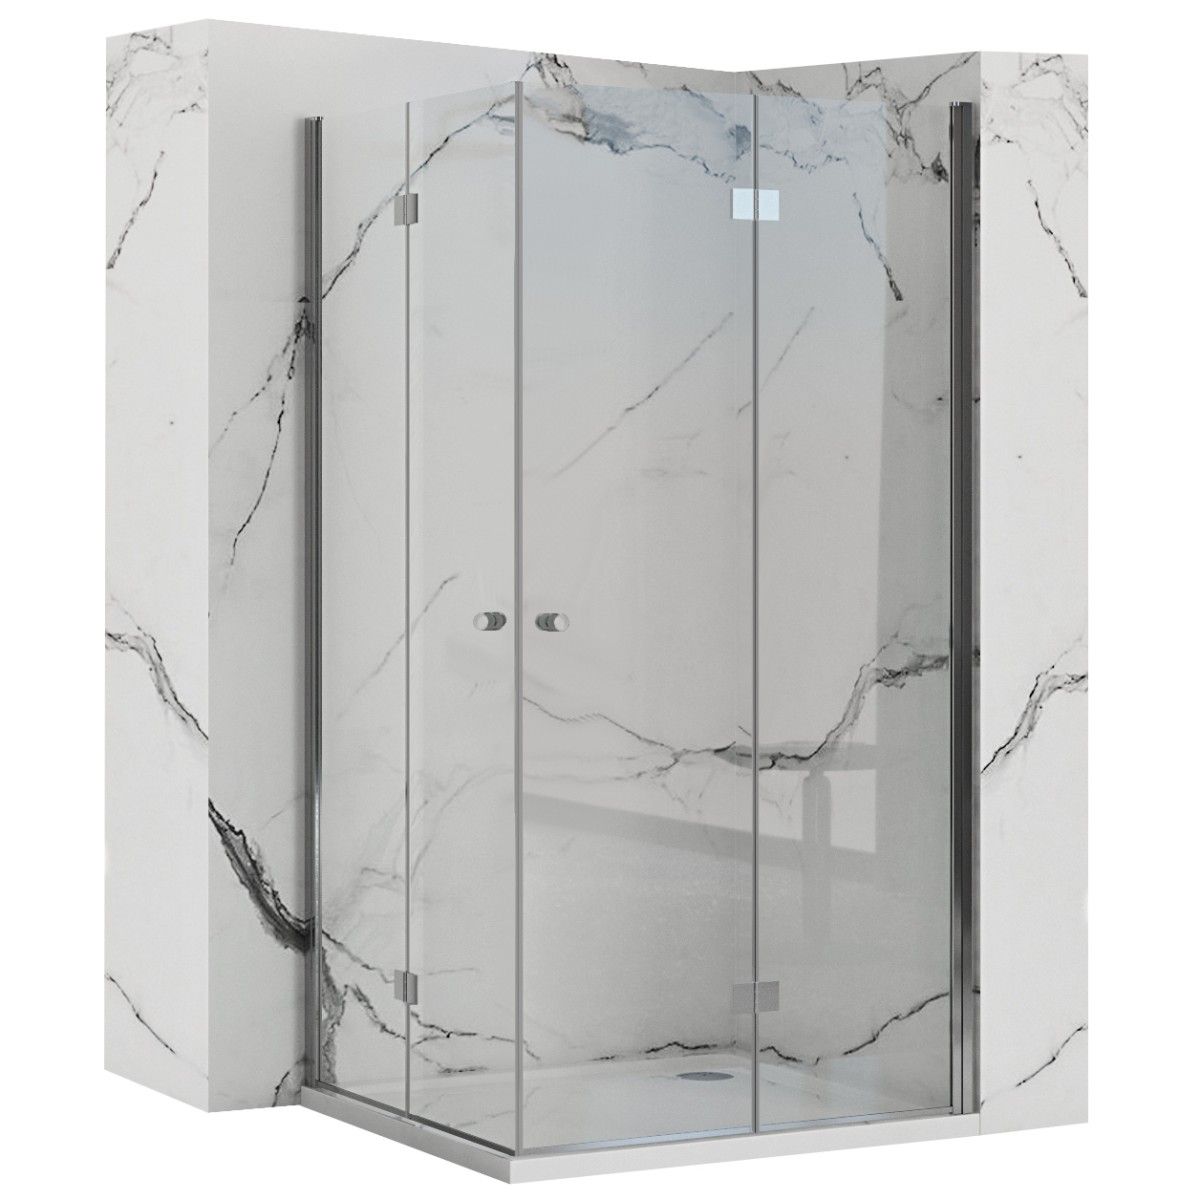 Sprchová kabina Rea Fold N2 transparentní, velikost 100x110 - Houseland.cz